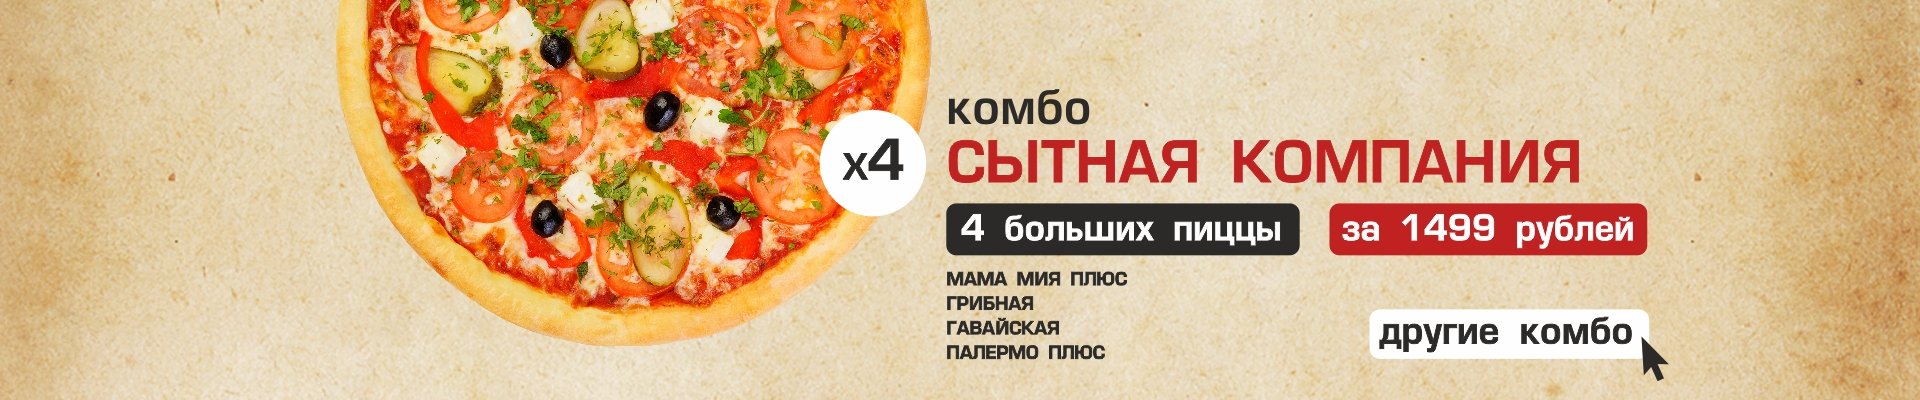 Как получить пиццу бесплатно москва